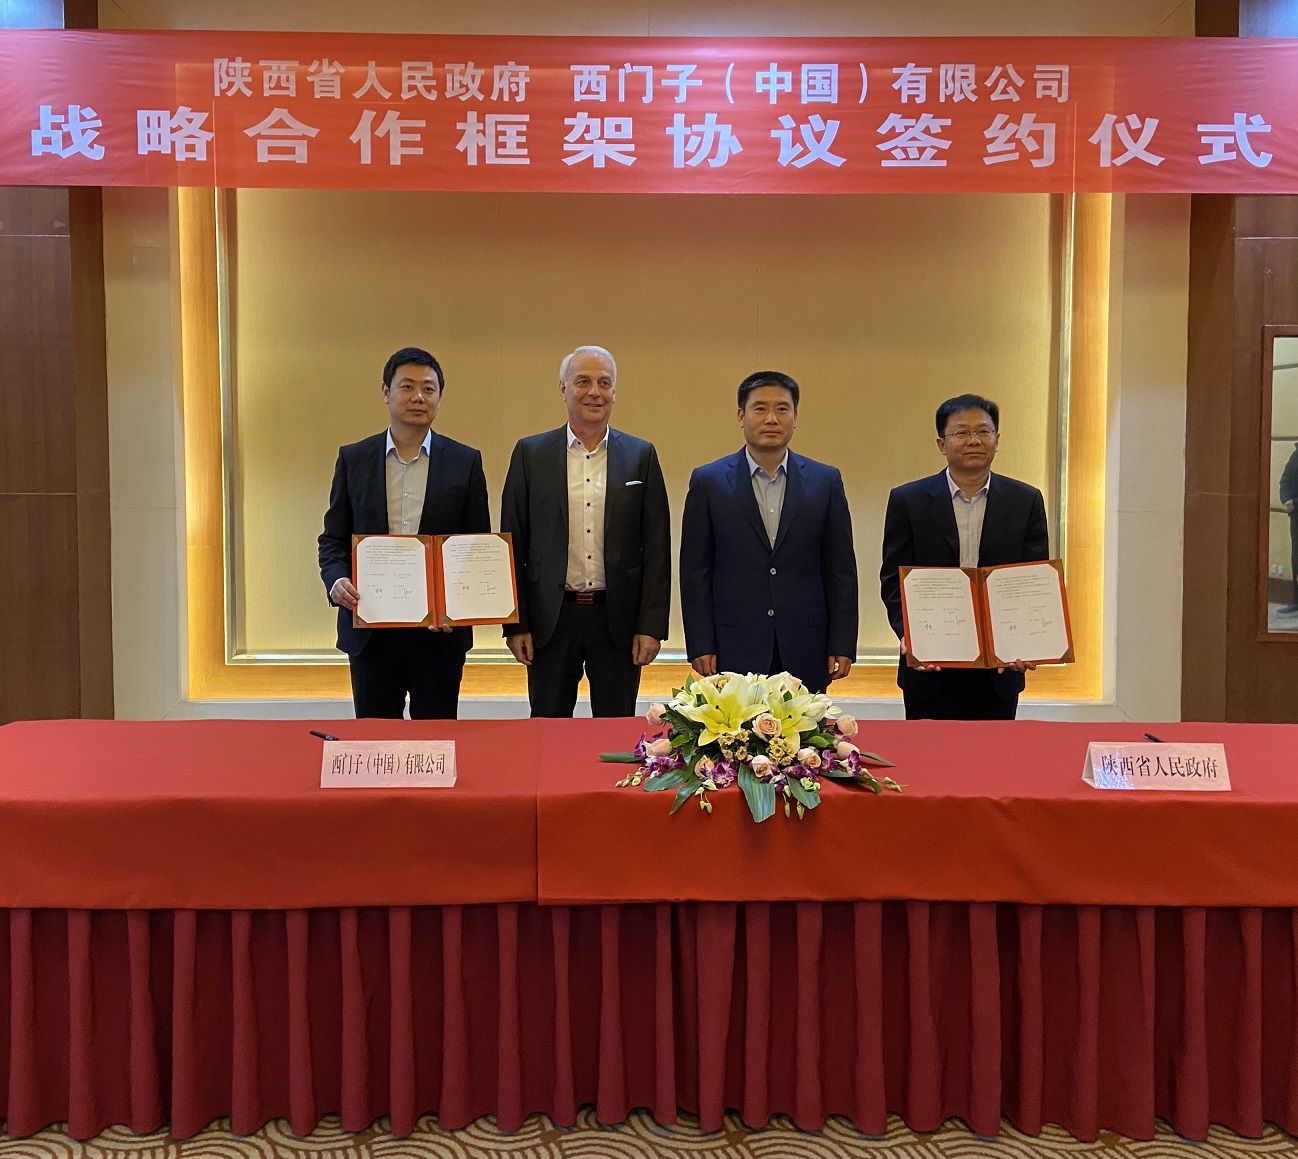 西门子与陕西省签署战略合作框架协议